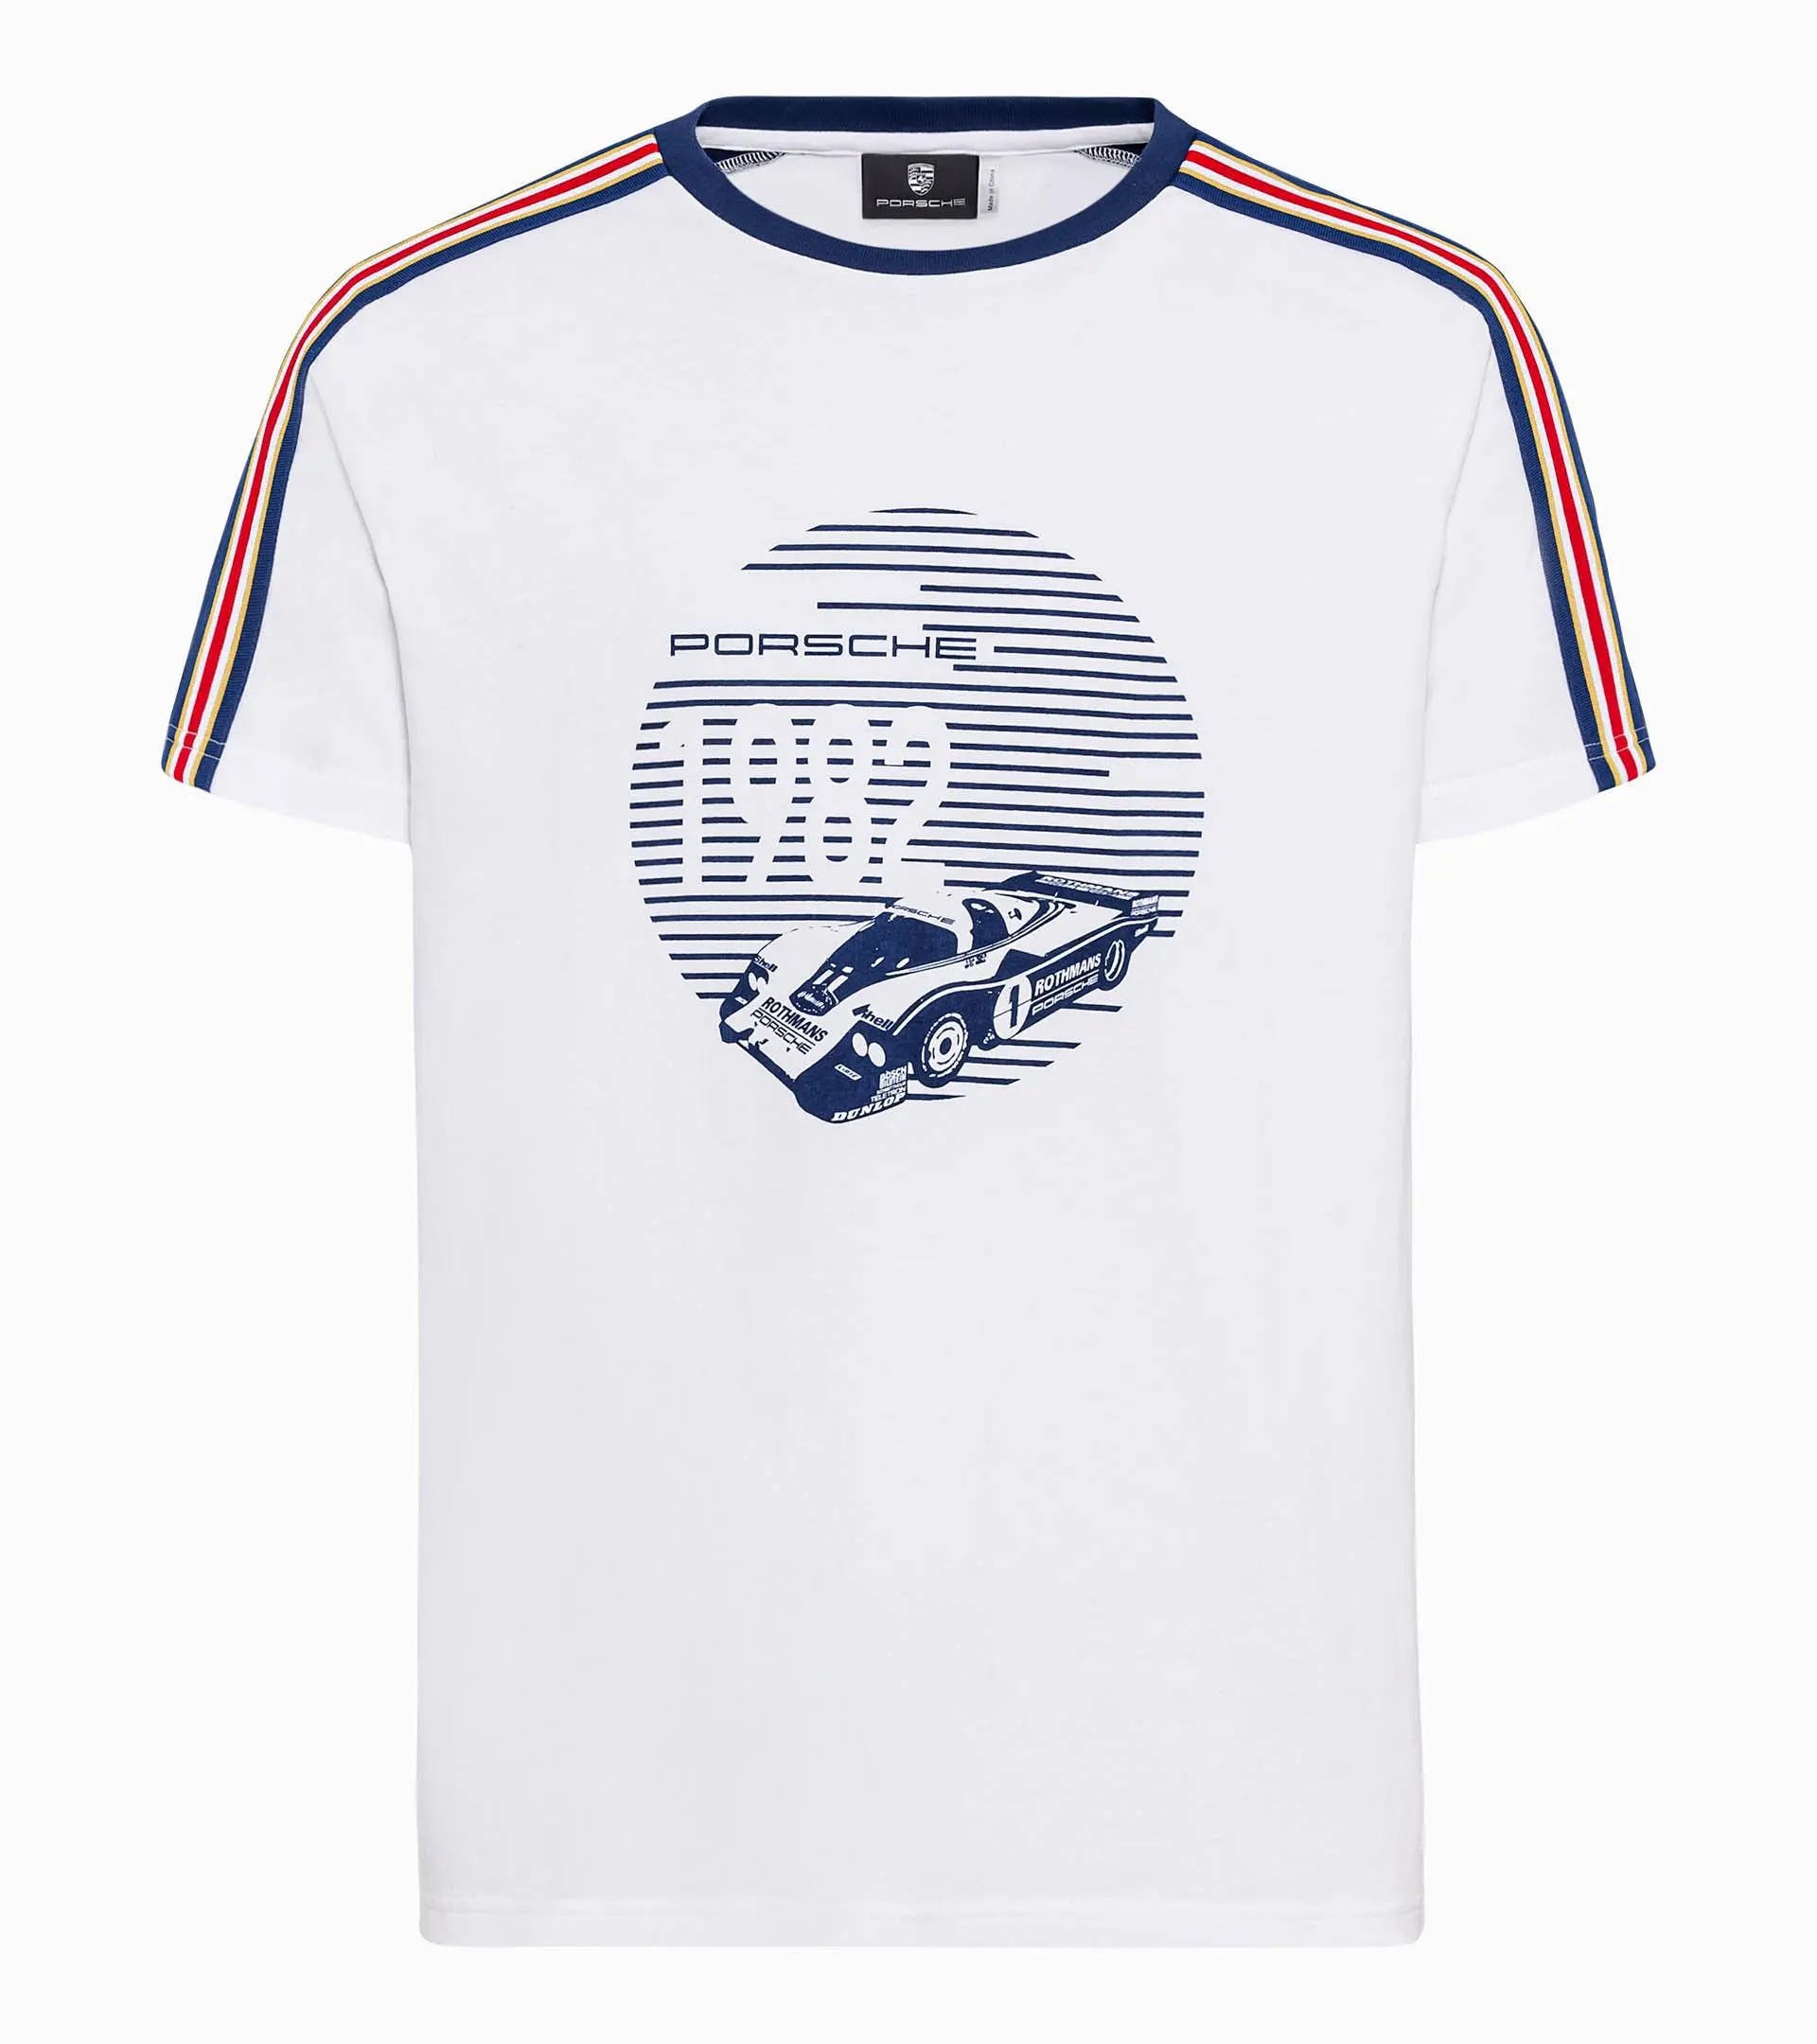 Porsche T-shirt – Racing